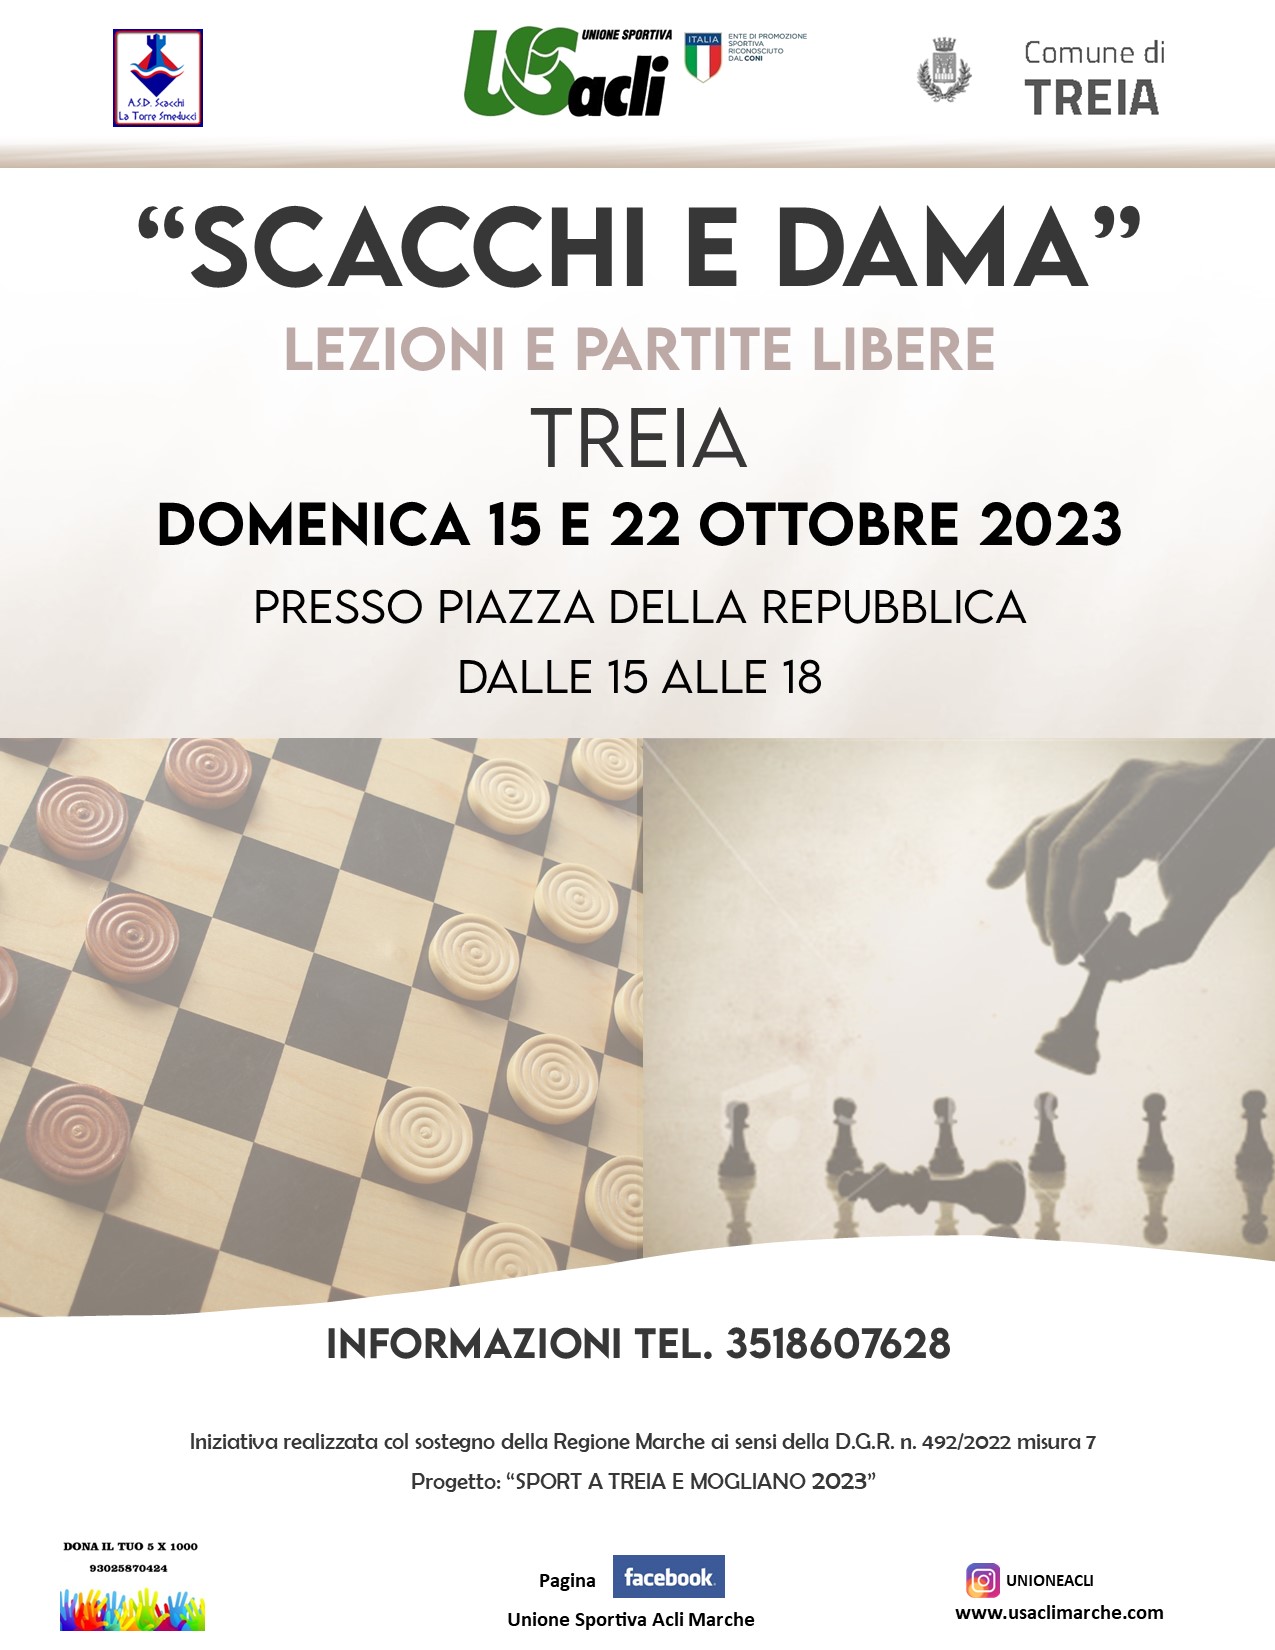 Marche. A Treia partite libere di scacchi e dama dal 15 al 22 ottobre 2023